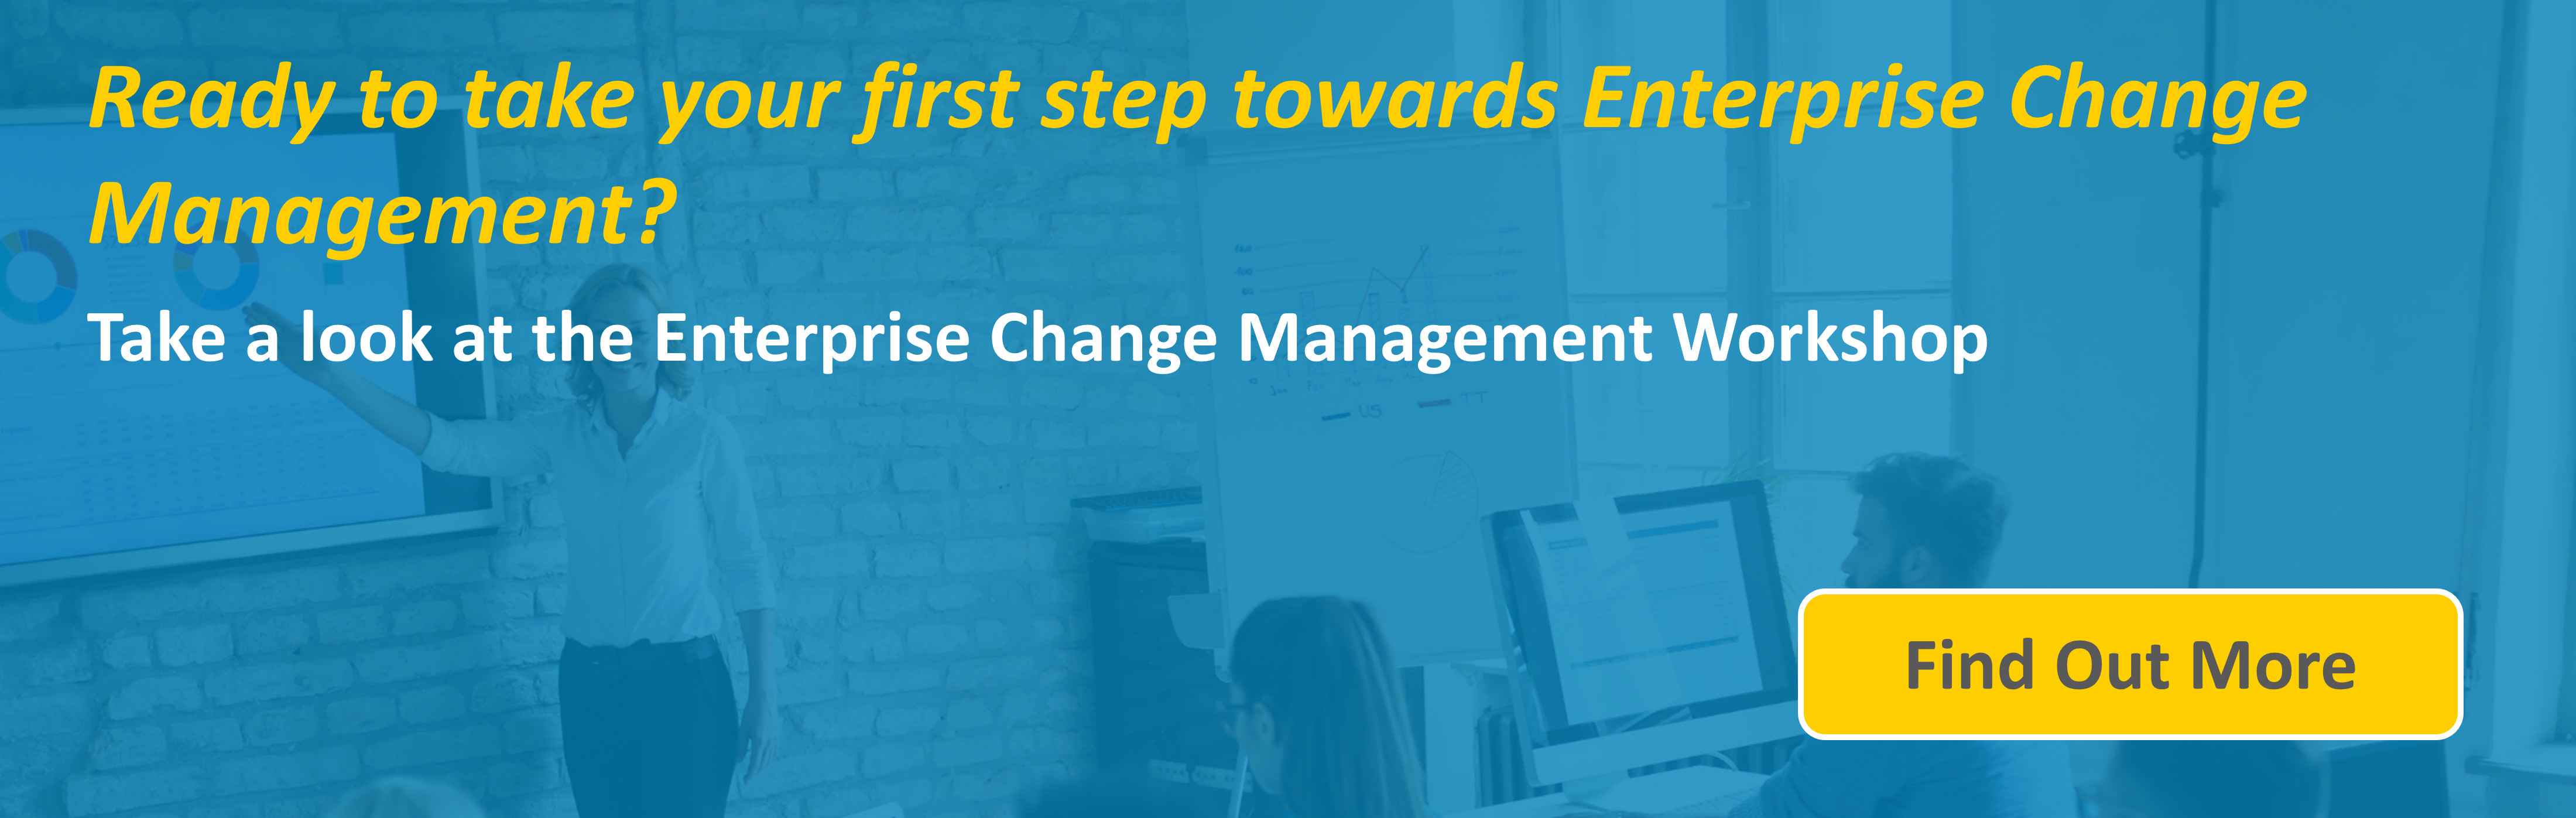 Enterprise Change Management banner